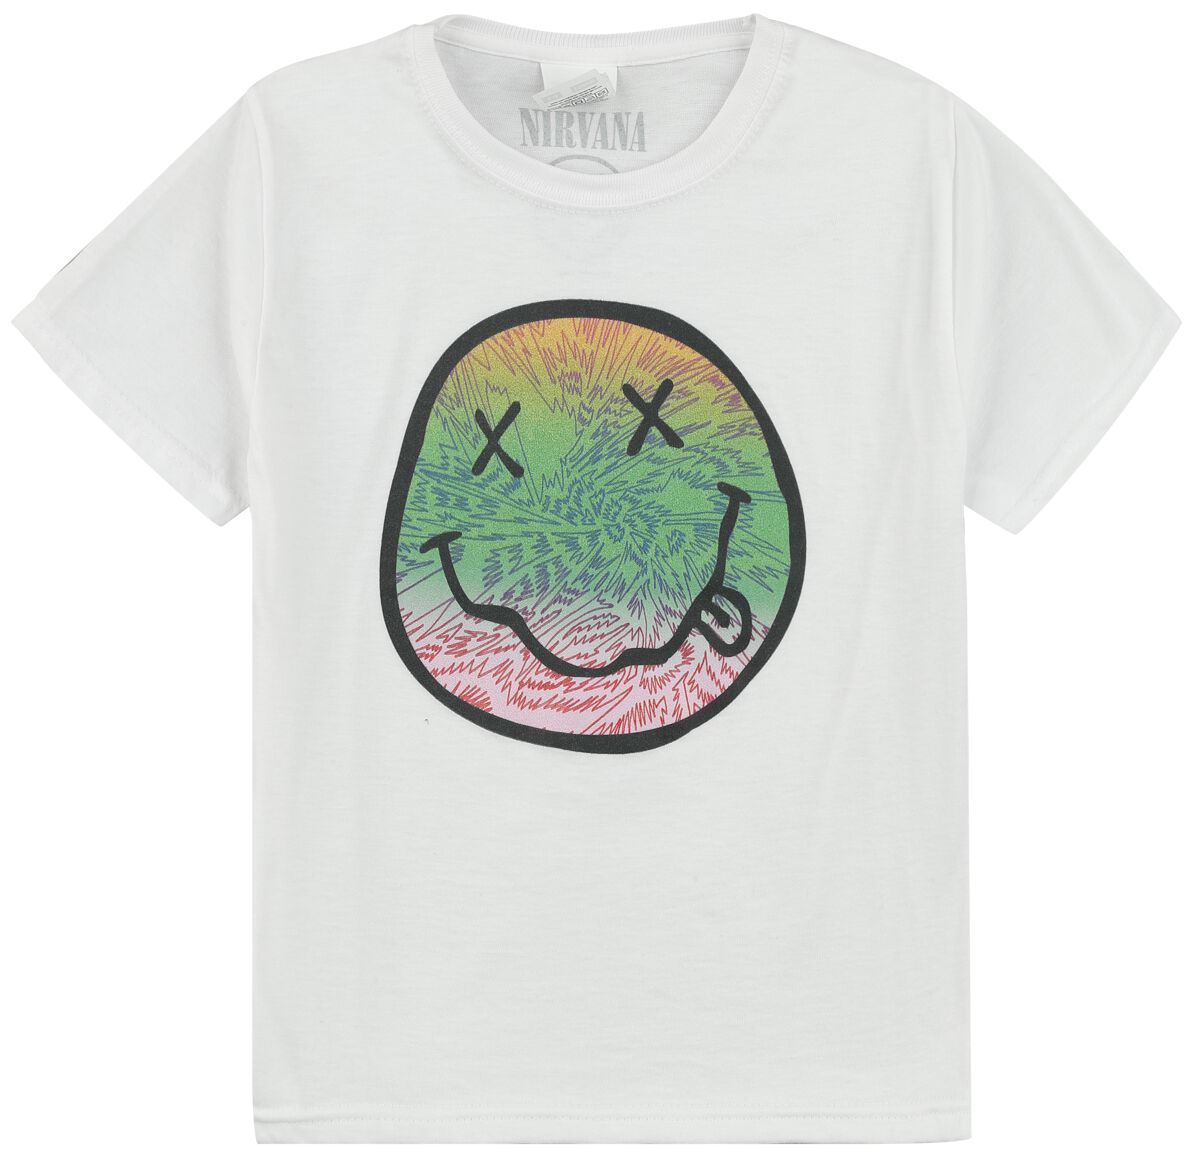 Nirvana T-Shirt für Kinder - Kids - Multicolor Smiley - für Mädchen & Jungen - weiß  - Lizenziertes Merchandise!